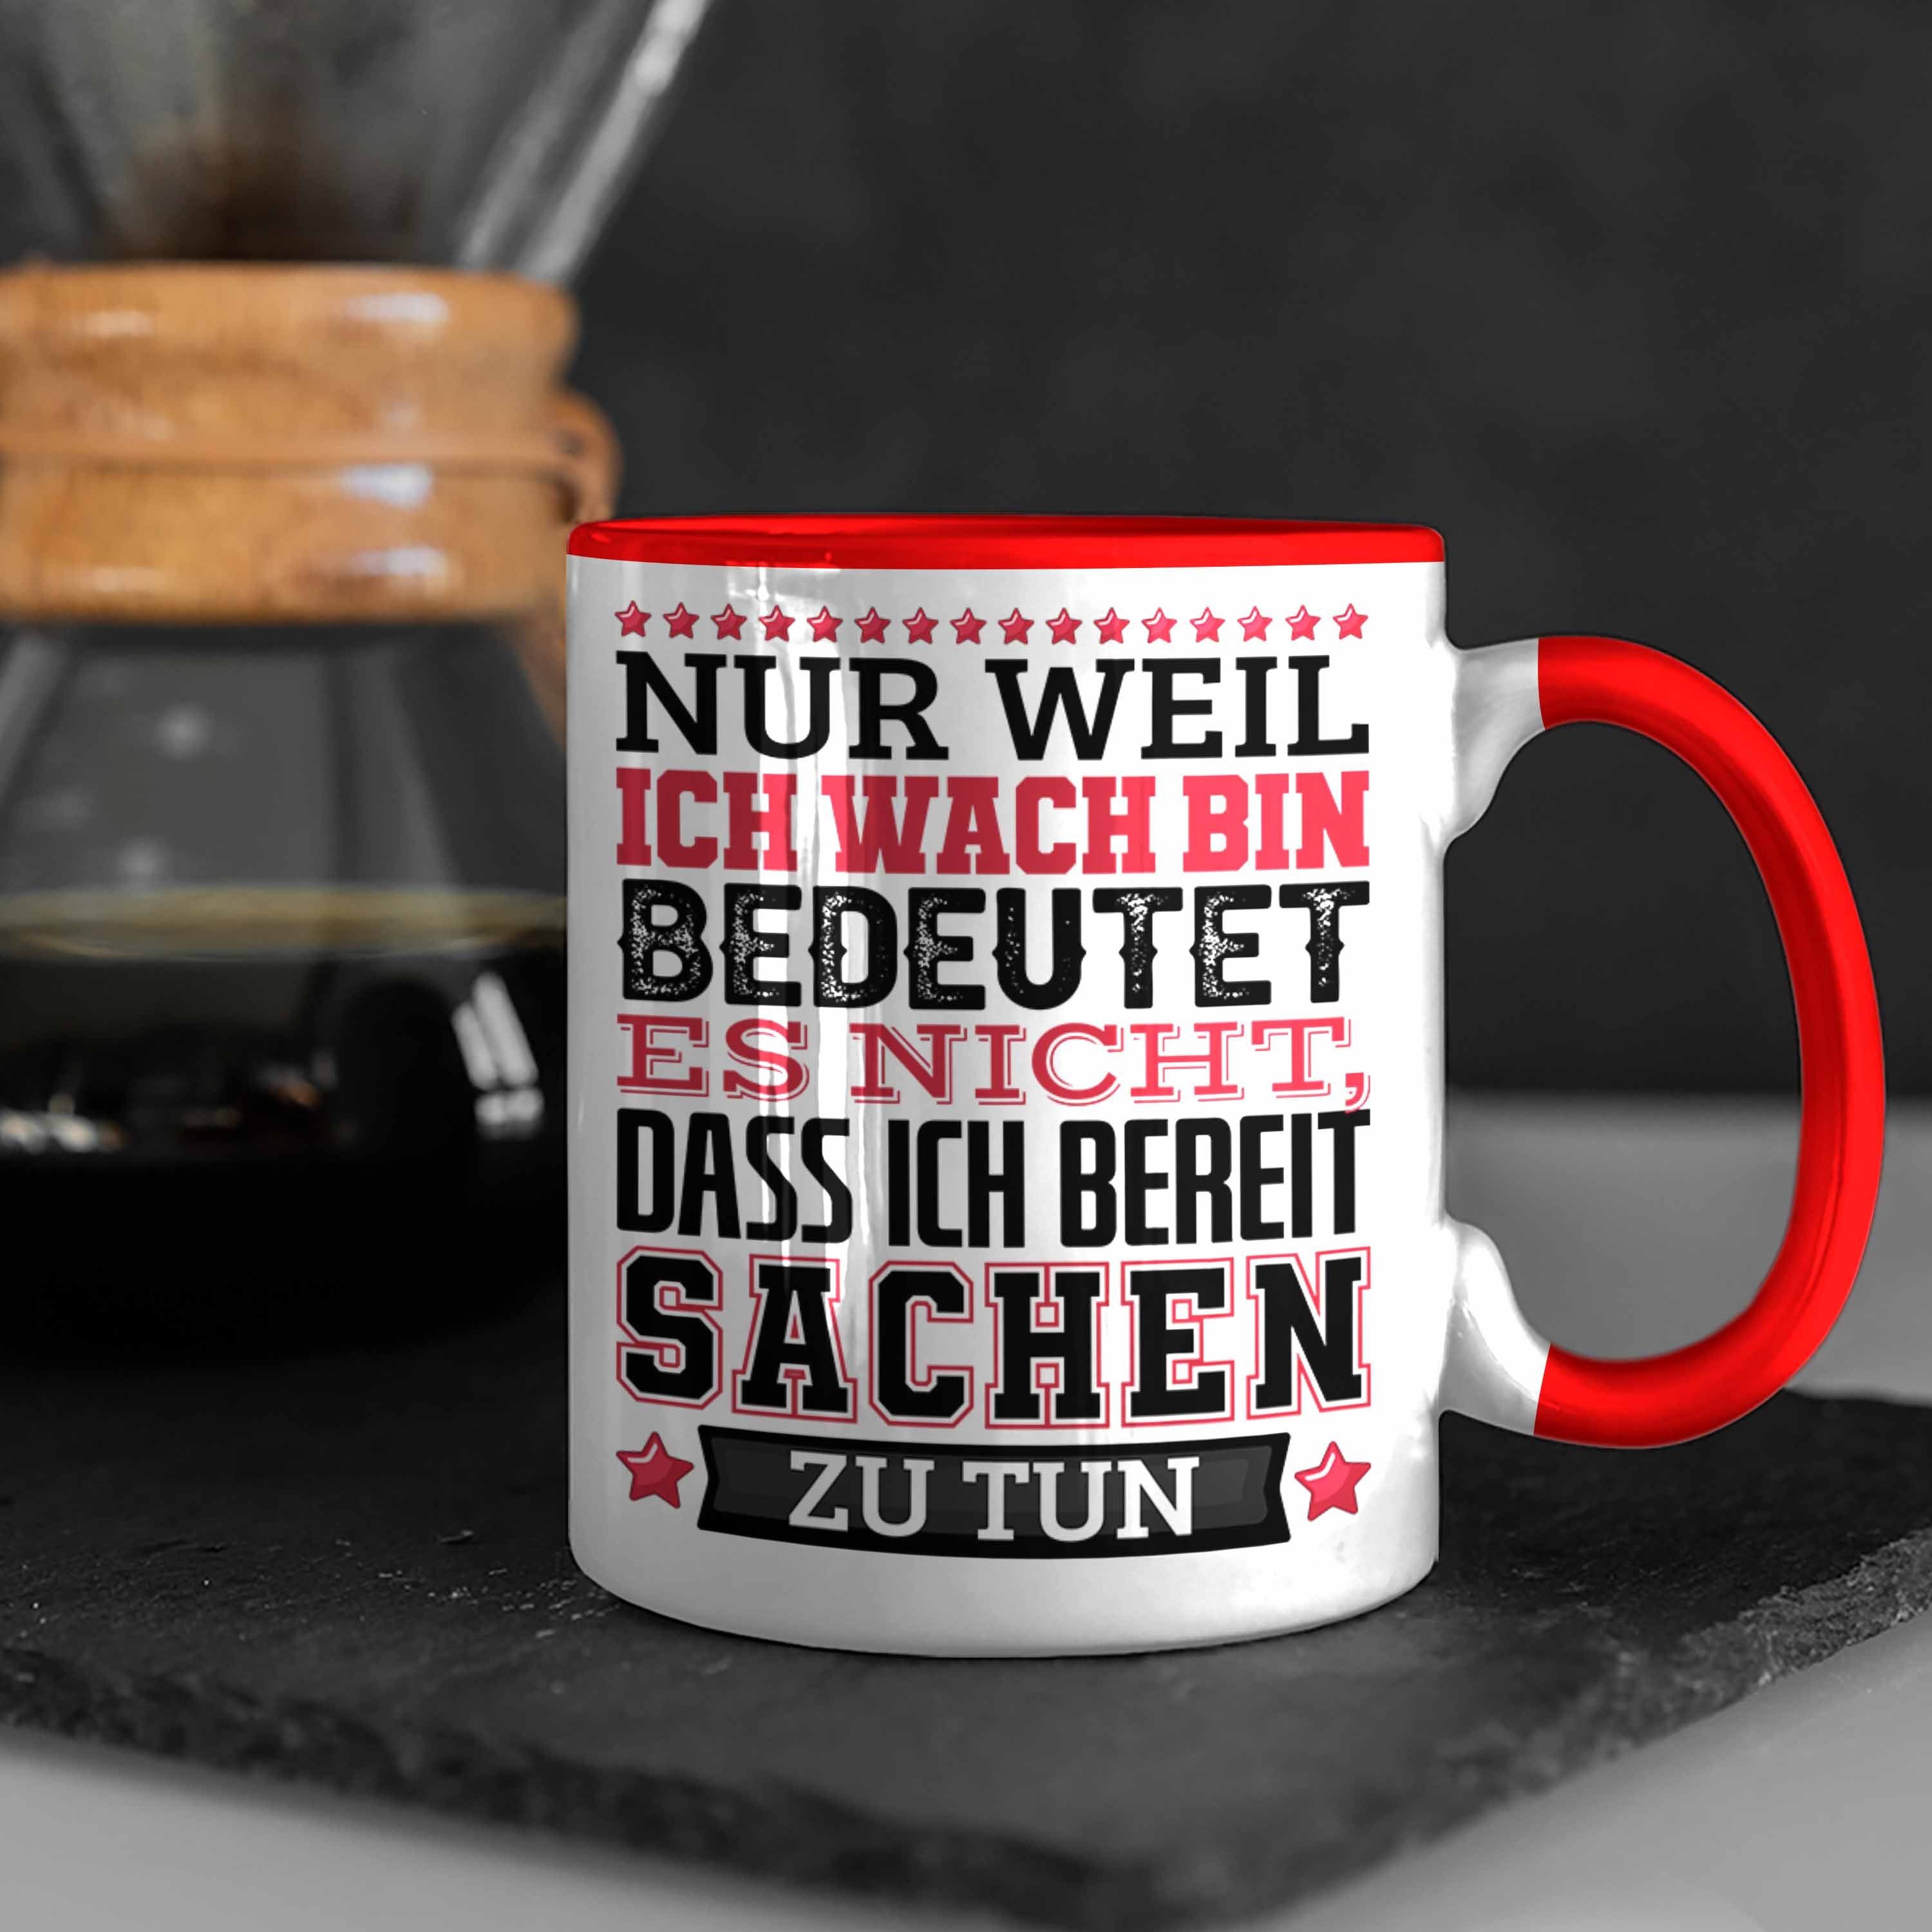 Trendation Tasse Lustiger Spruch Tasse Rot Nur Weil Nic Wach Heißt Ich Kaffee-Becher Bin Es